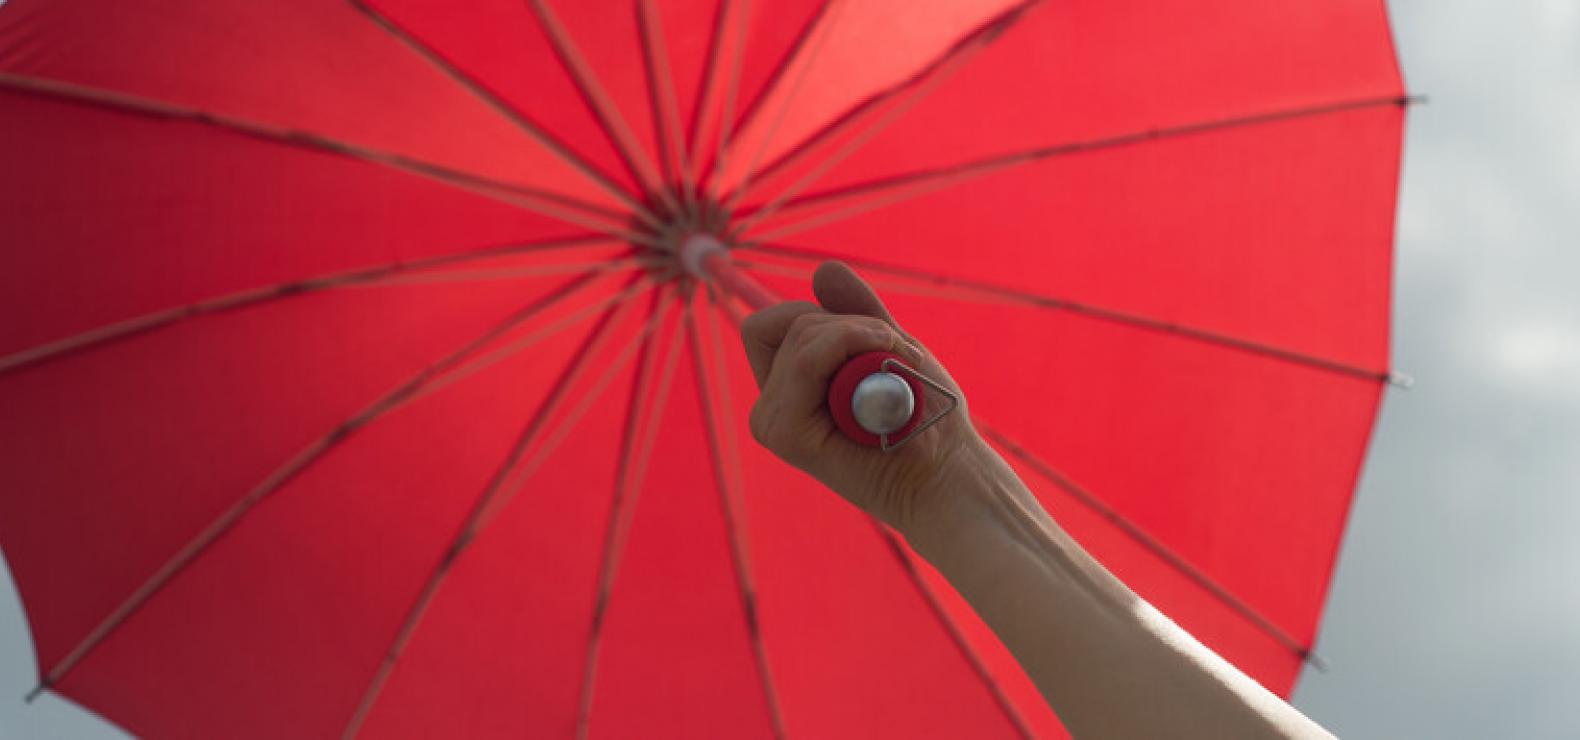 roter Regenschirm